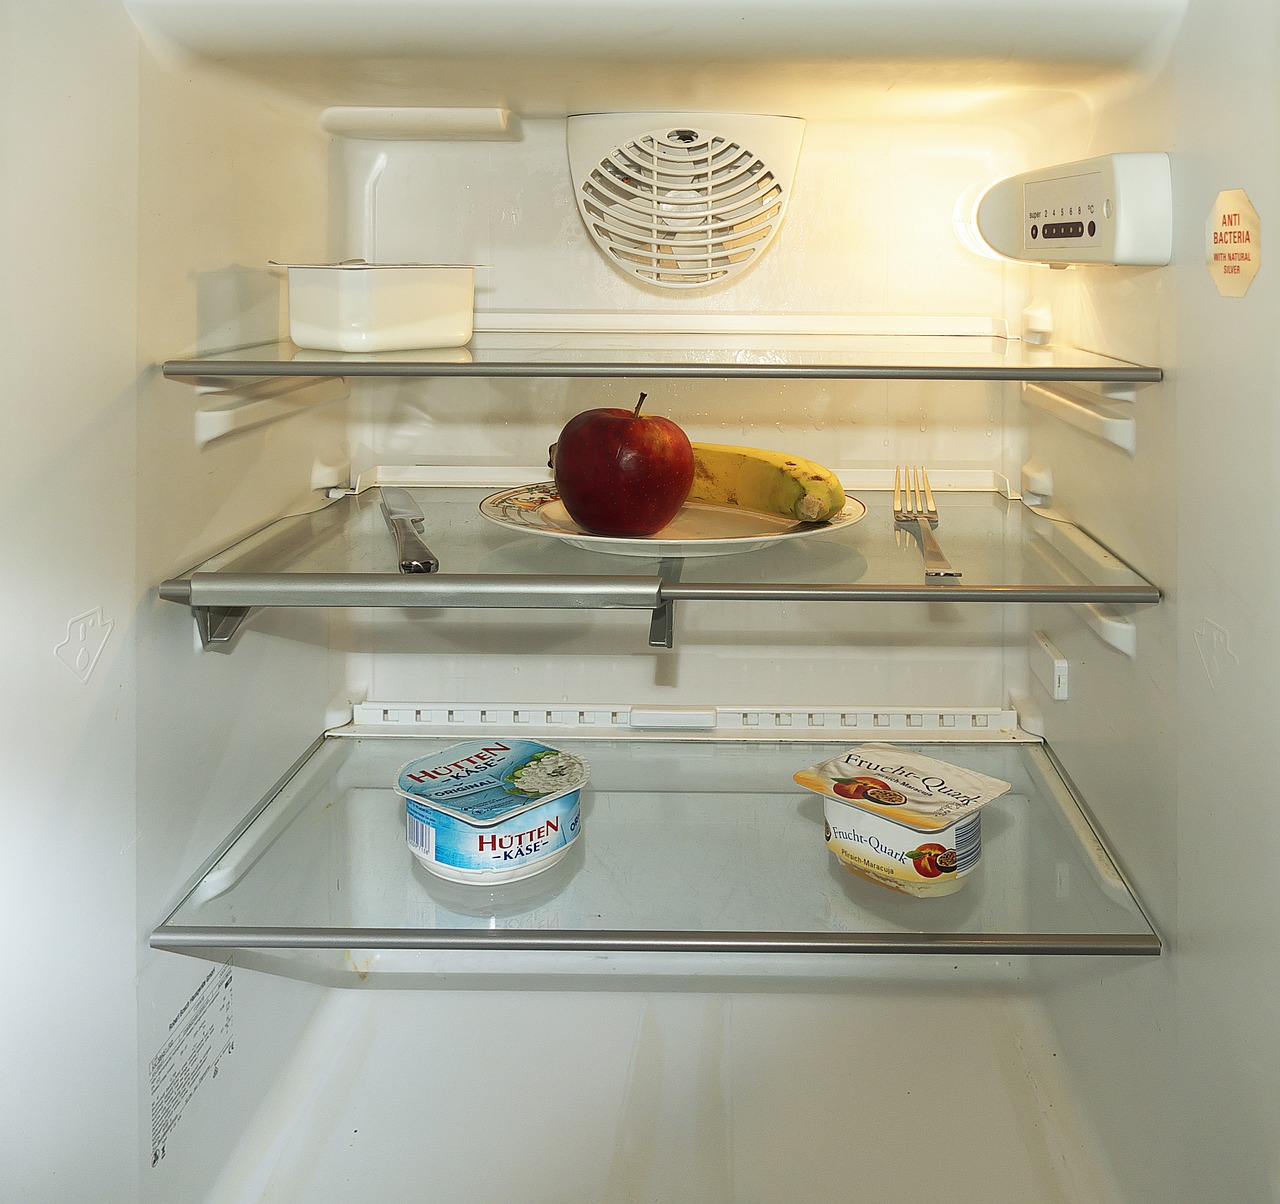 Come risolvere il problema della luce del frigorifero che lampeggia?